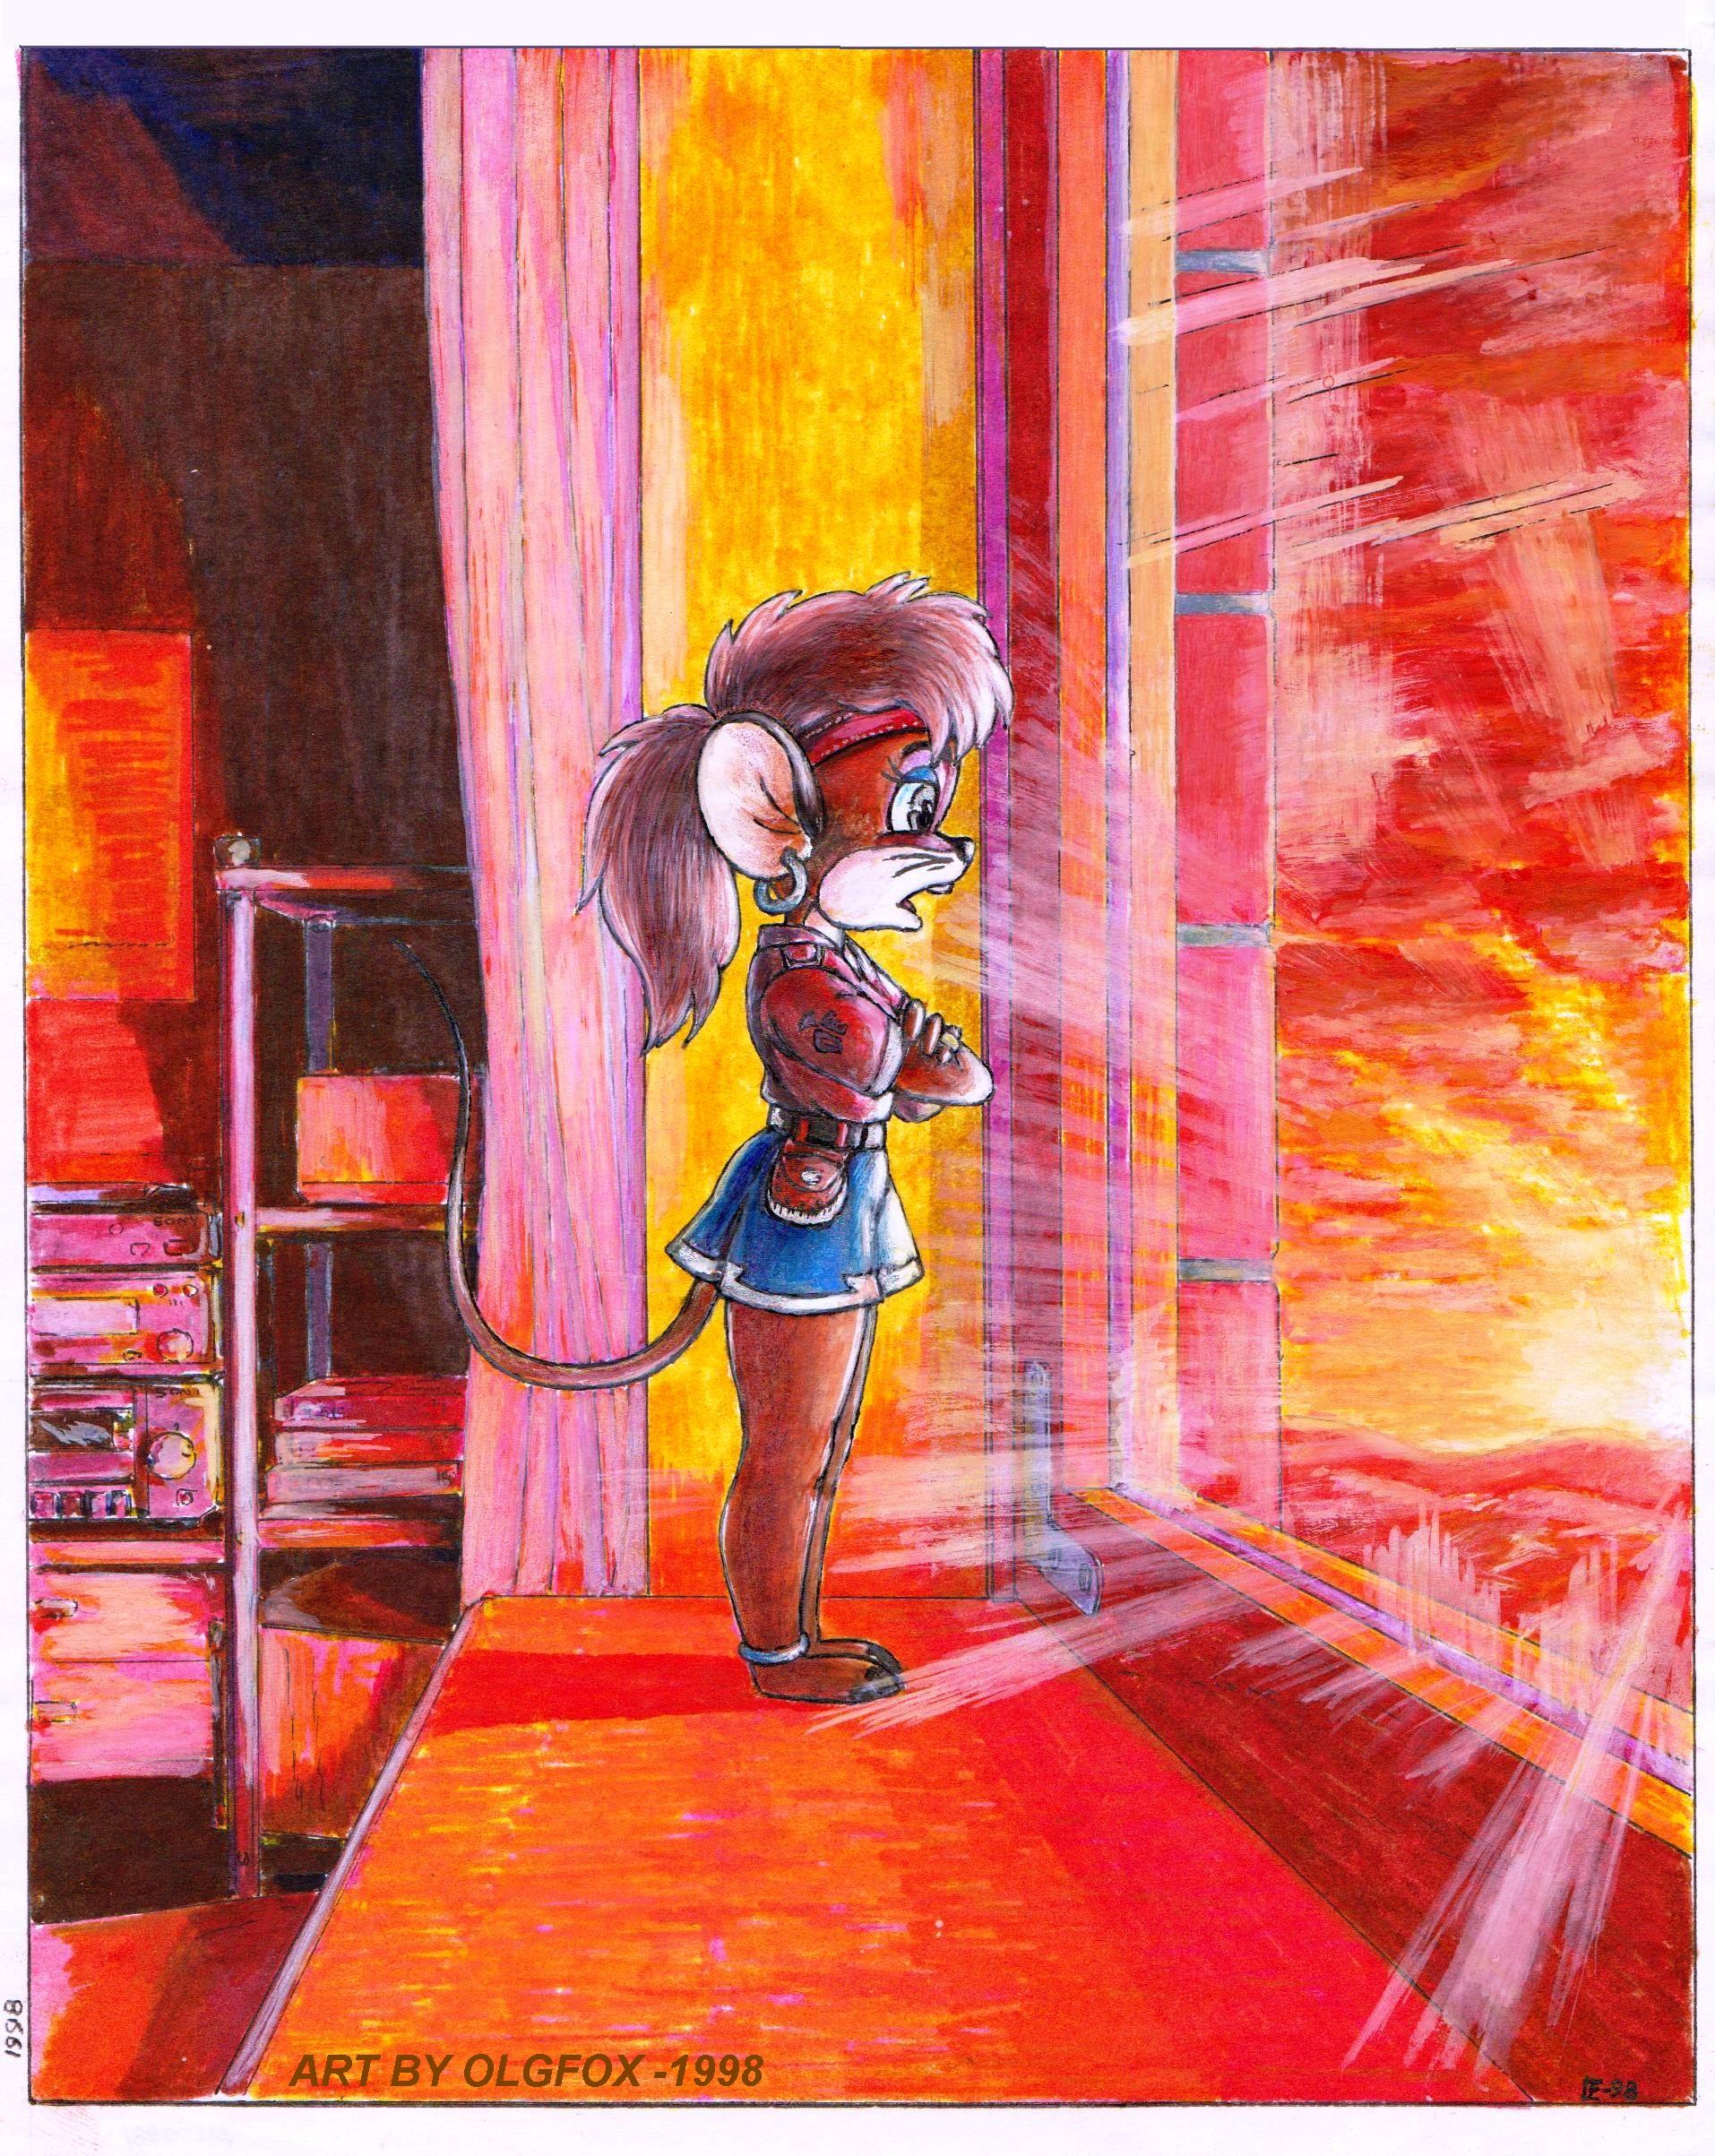 Home Mouse Girl sunset by Olgfox -1998.jpg